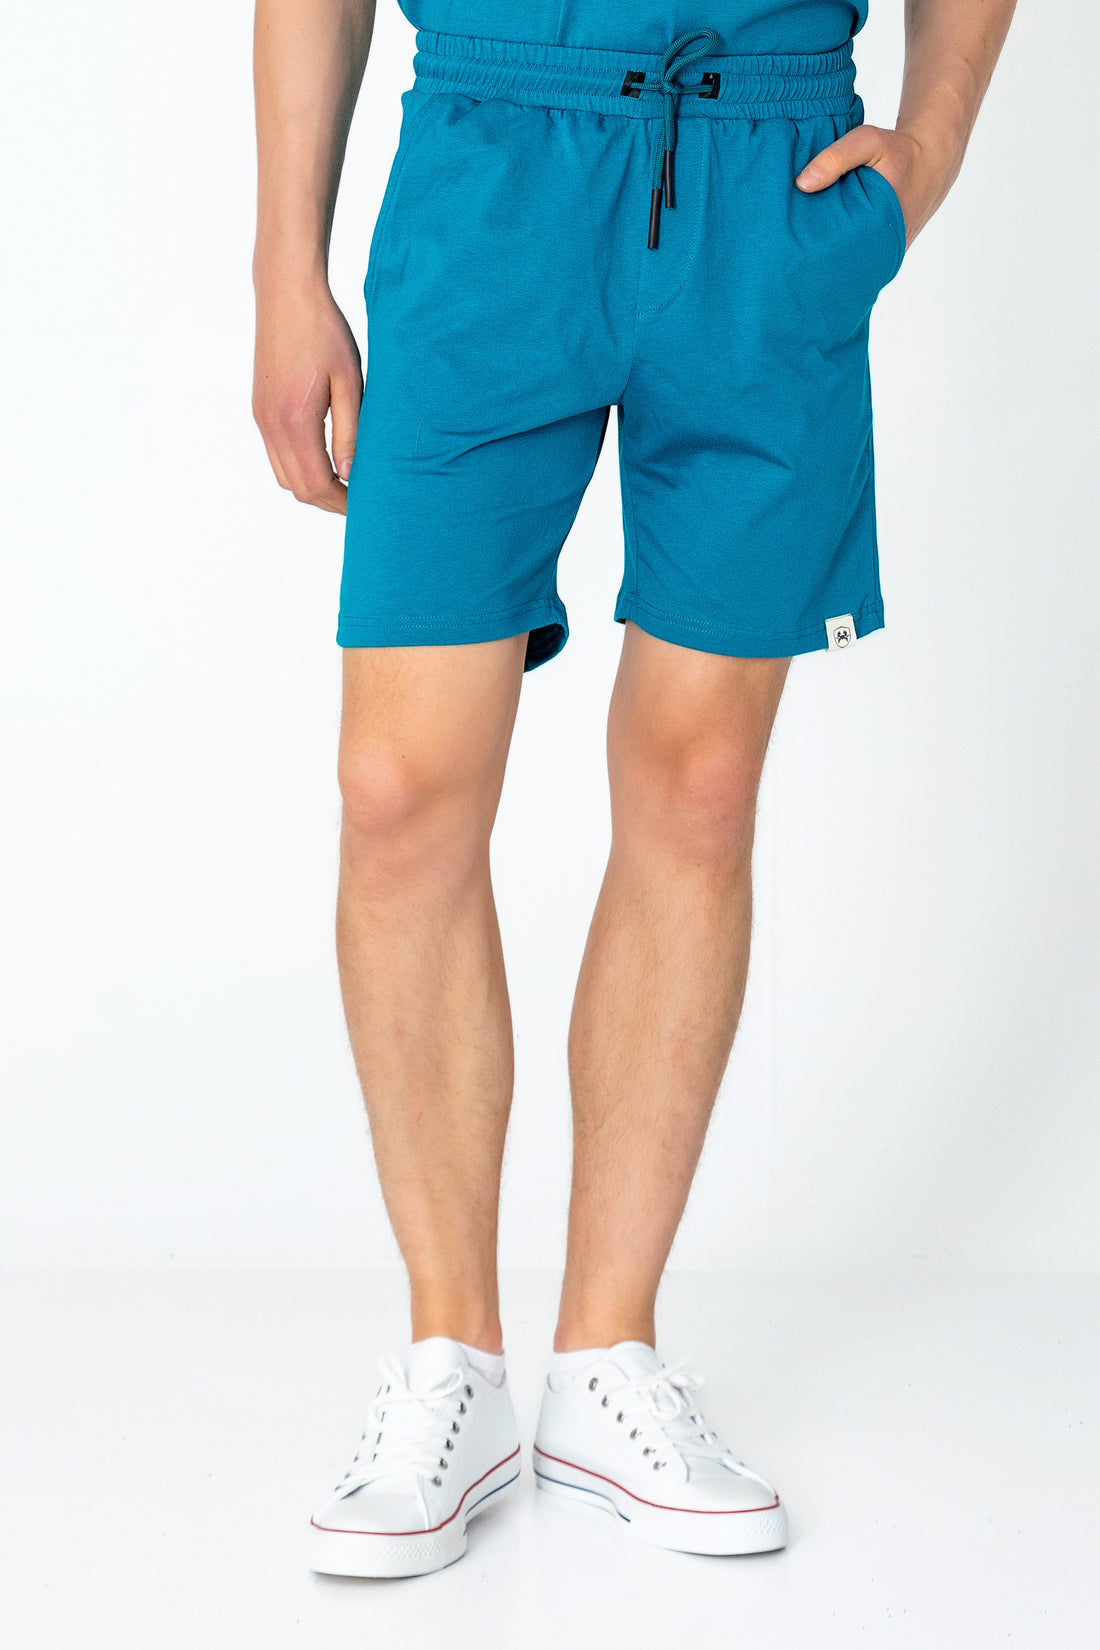 Lightweight Cotton Shorts - Hawaii